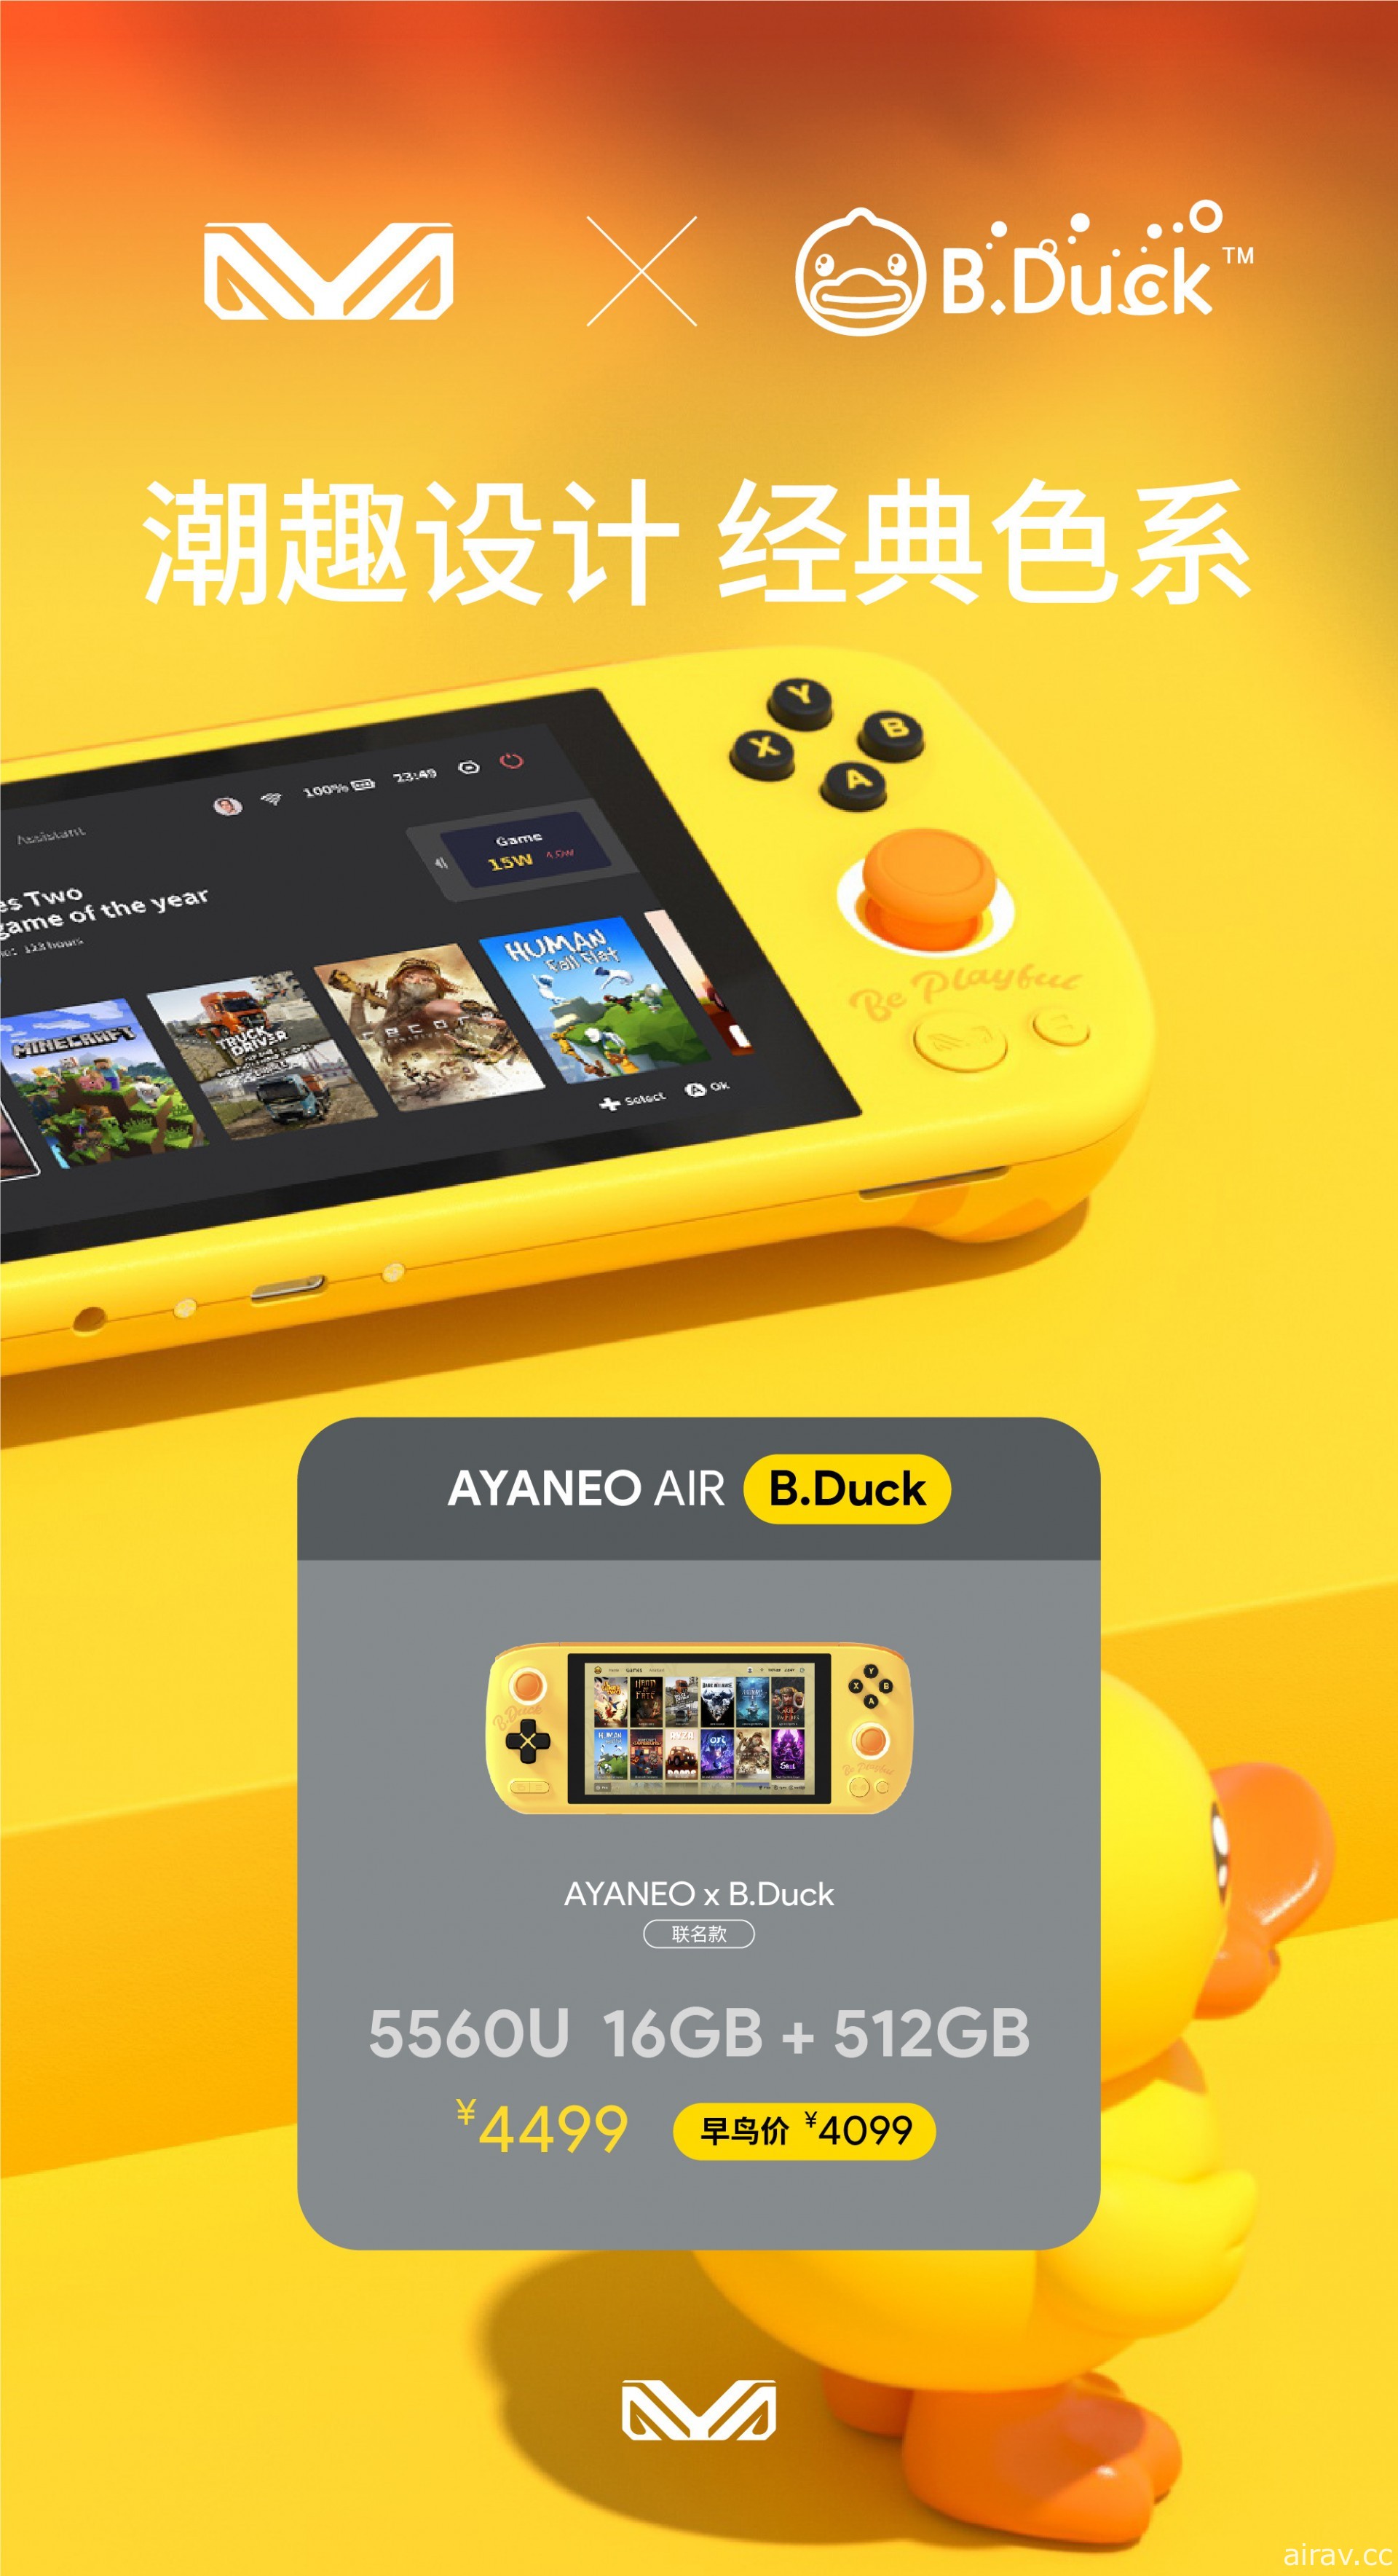 AYANEO 發表重量比 Switch 主機更輕的可攜式遊戲 PC「AYANEO AIR」